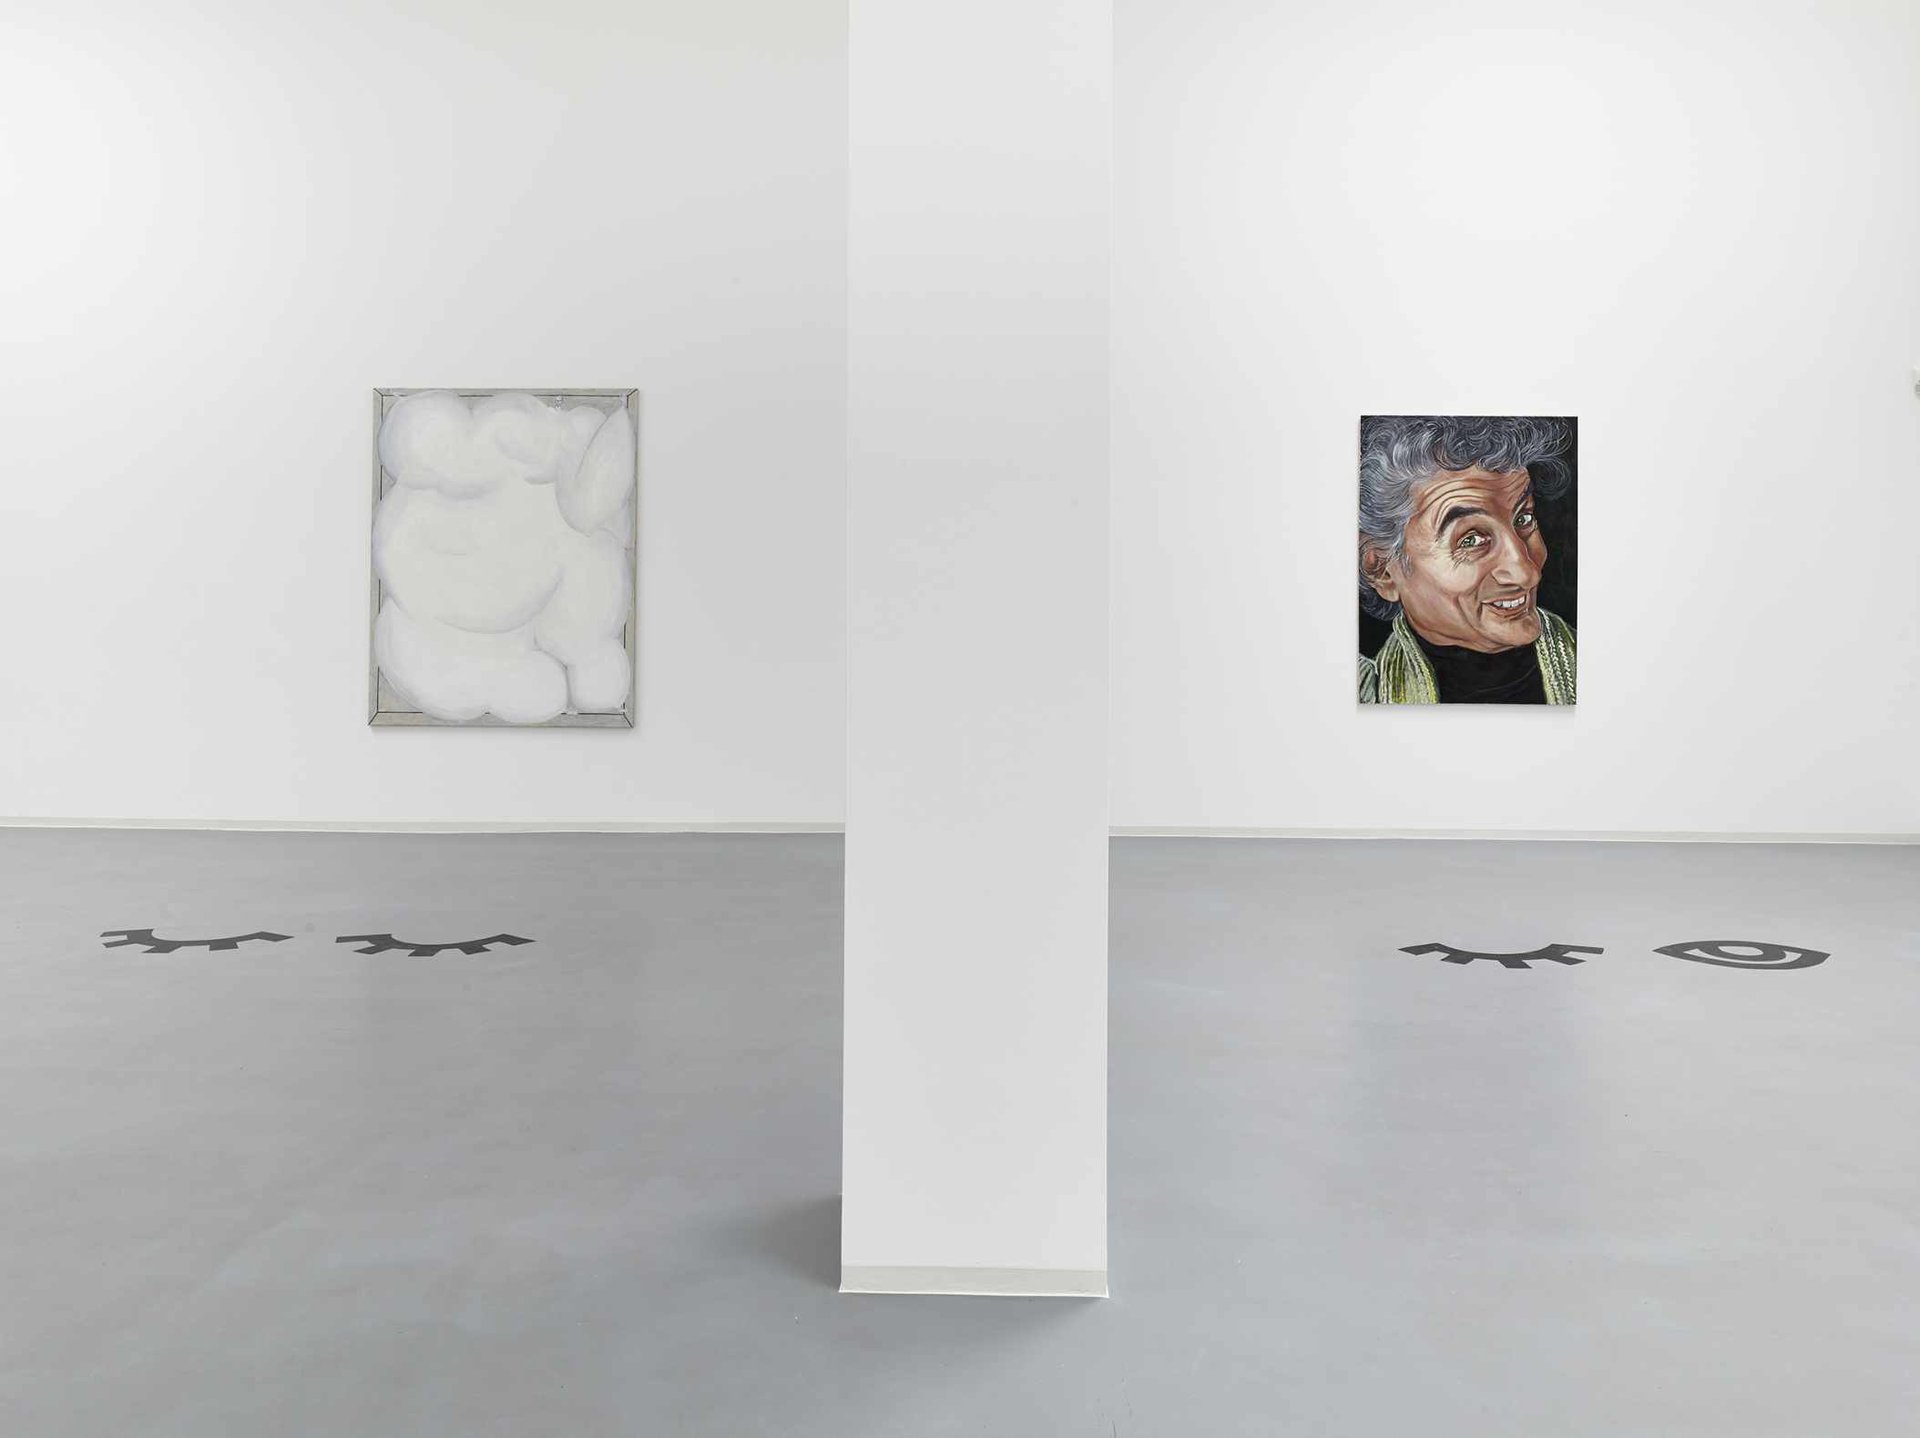 Jana Euler, Installationsansicht, 2014, Bonner Kunstverein, Courtesy die Künstlerin und Galerie Neu, Berlin. Photo: Simon Vogel